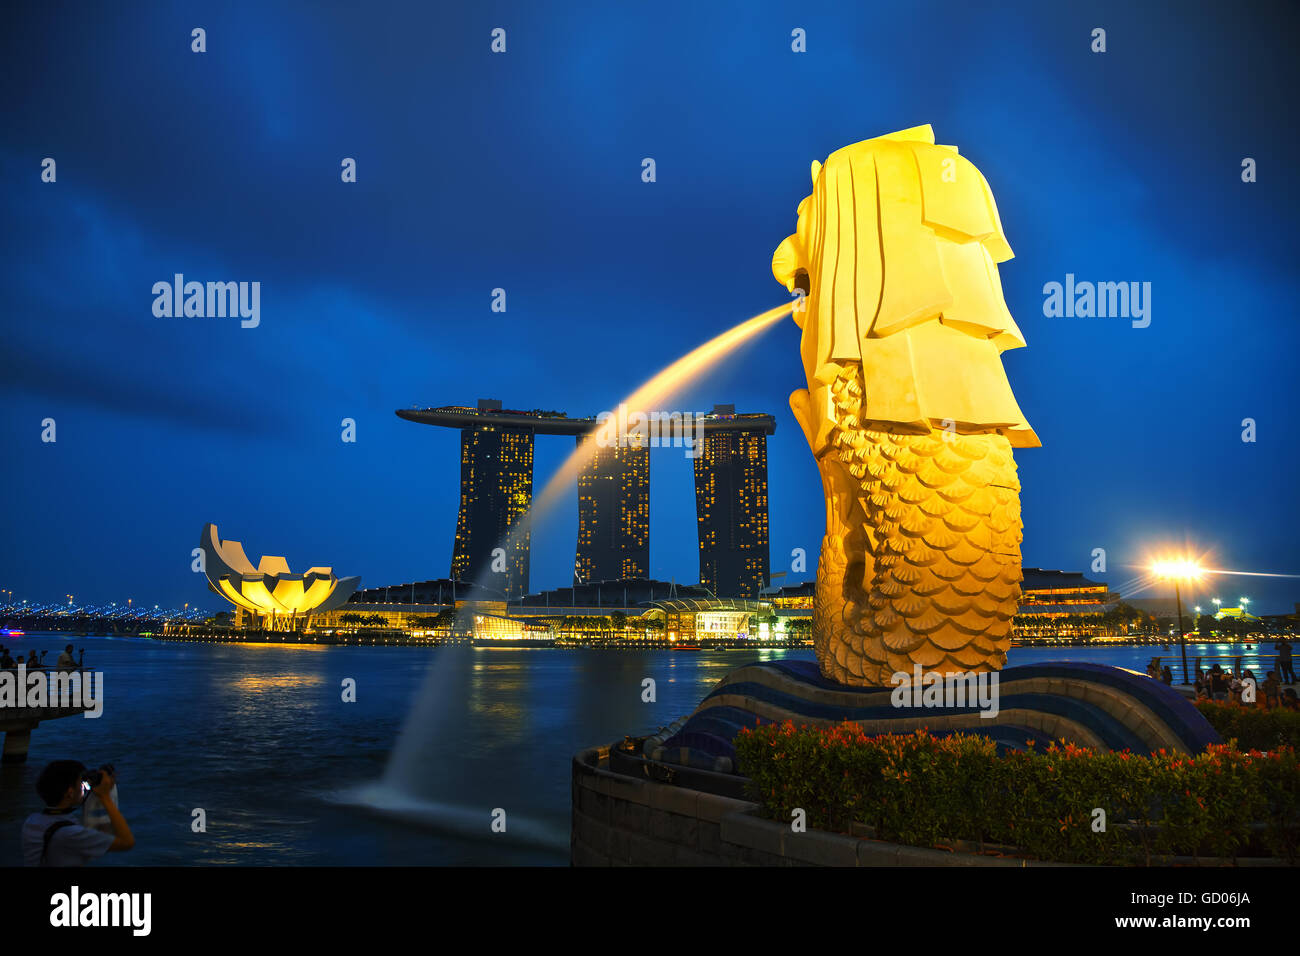 SINGAPORE - 31 ottobre: Panoramica della marina bay con il Merlion e Marina Bay Sands con persone su 31 Ottobre 2015 Foto Stock